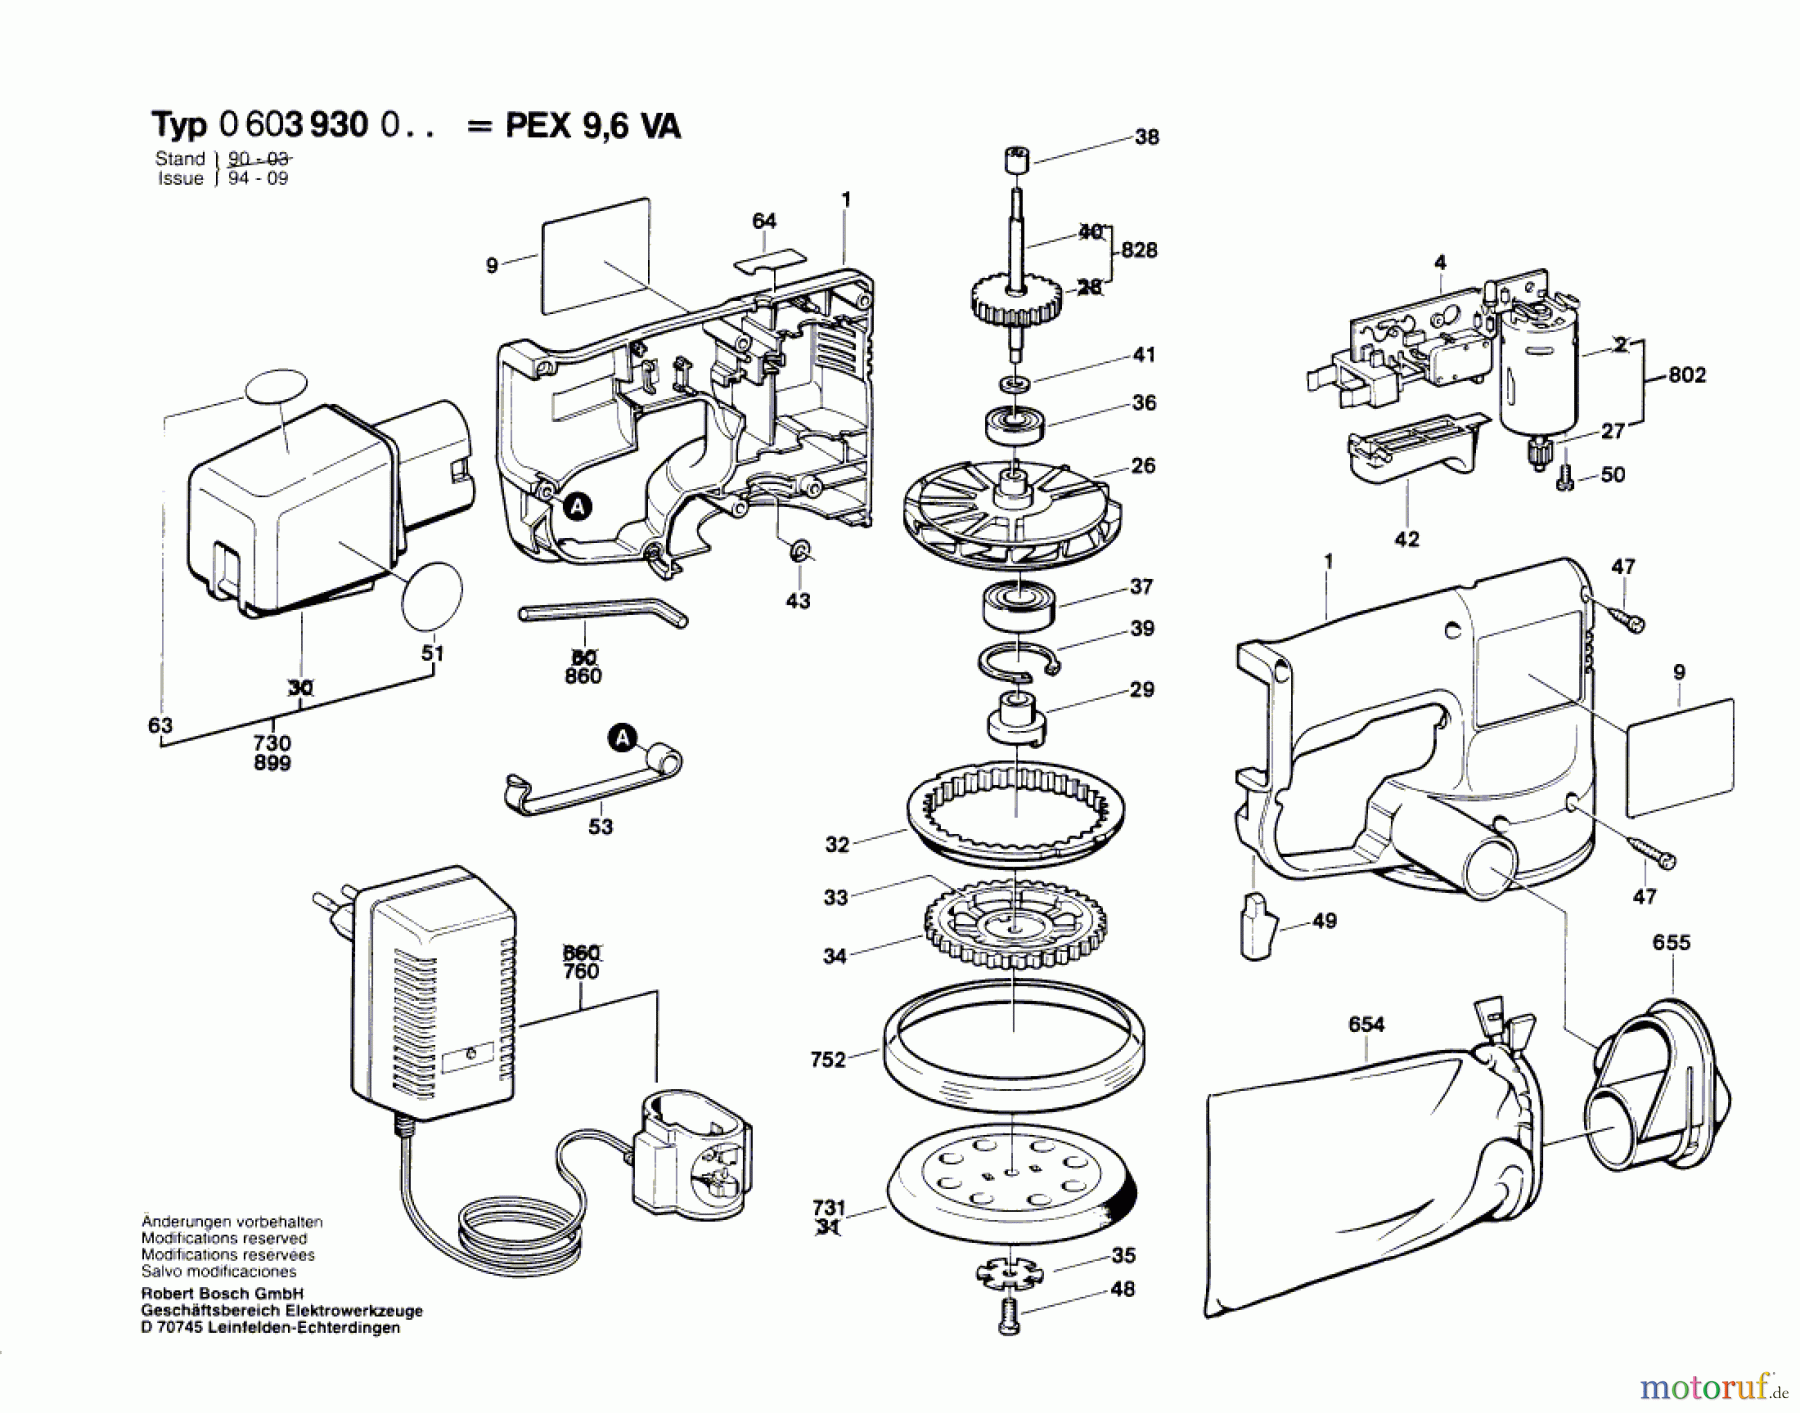  Bosch Werkzeug Exzenterschleifer PEX 9,6 VA Seite 1